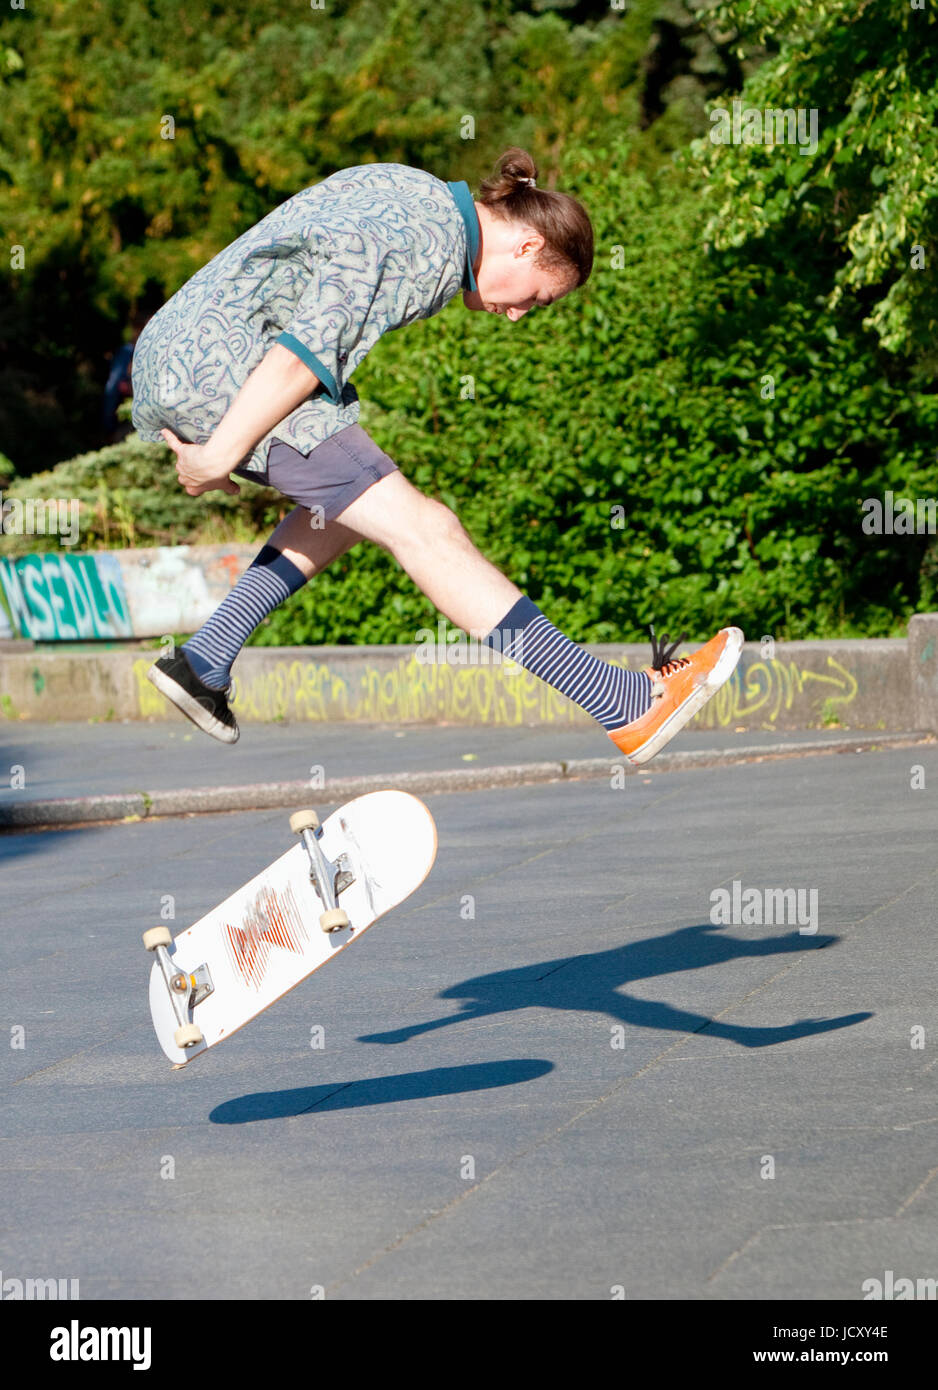 Skateboarding - Skater jumping on  skateboard.. Stock Photo